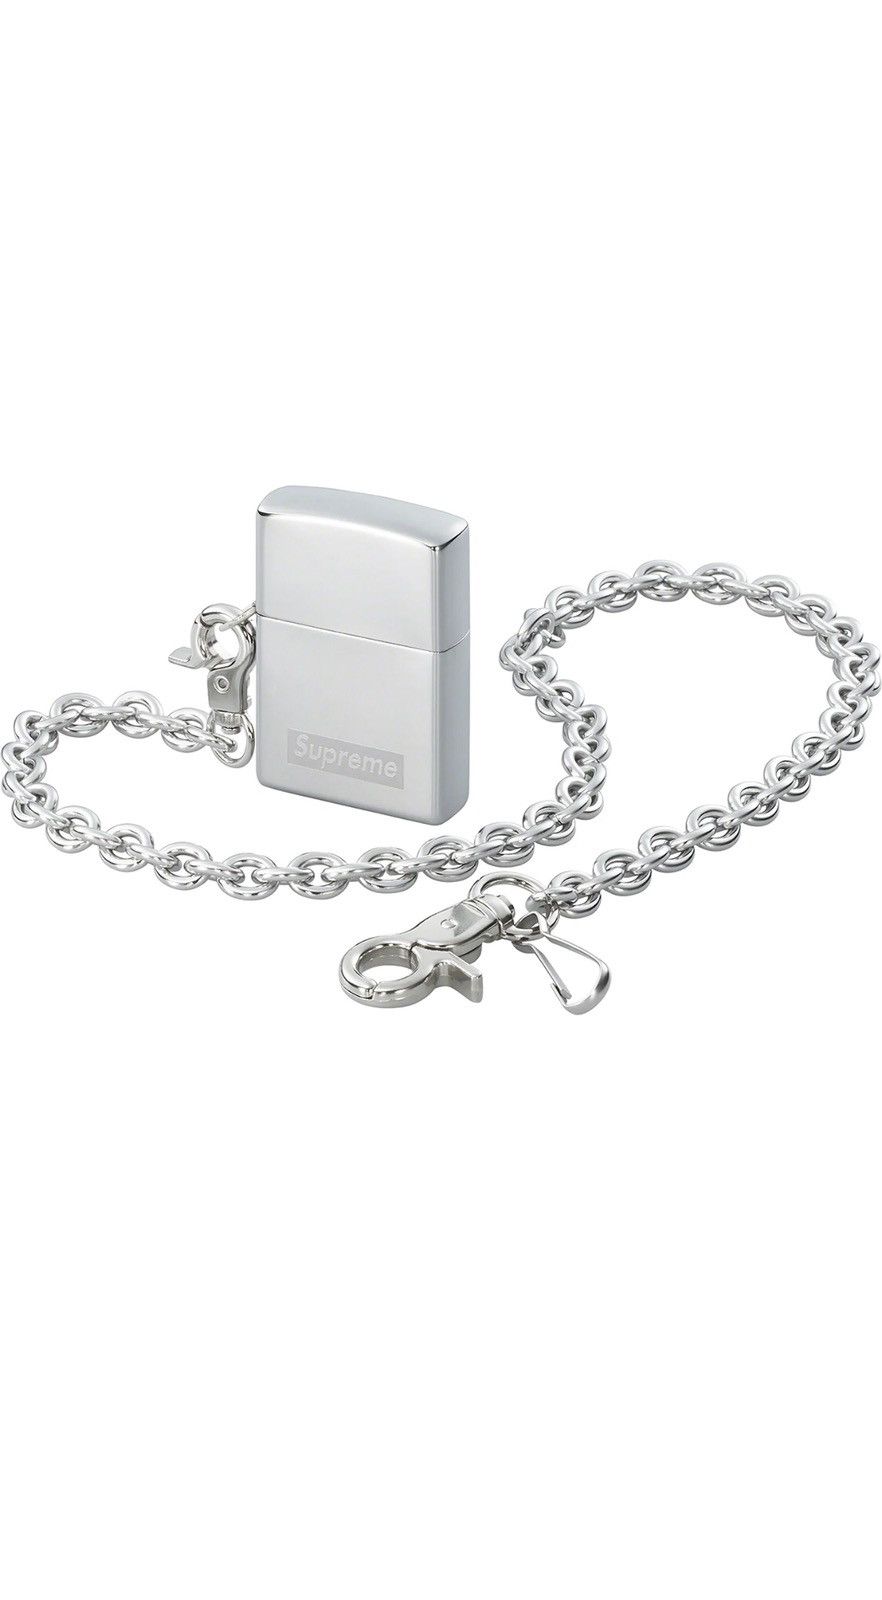 Supreme Chain Zippo Silver | Grailed